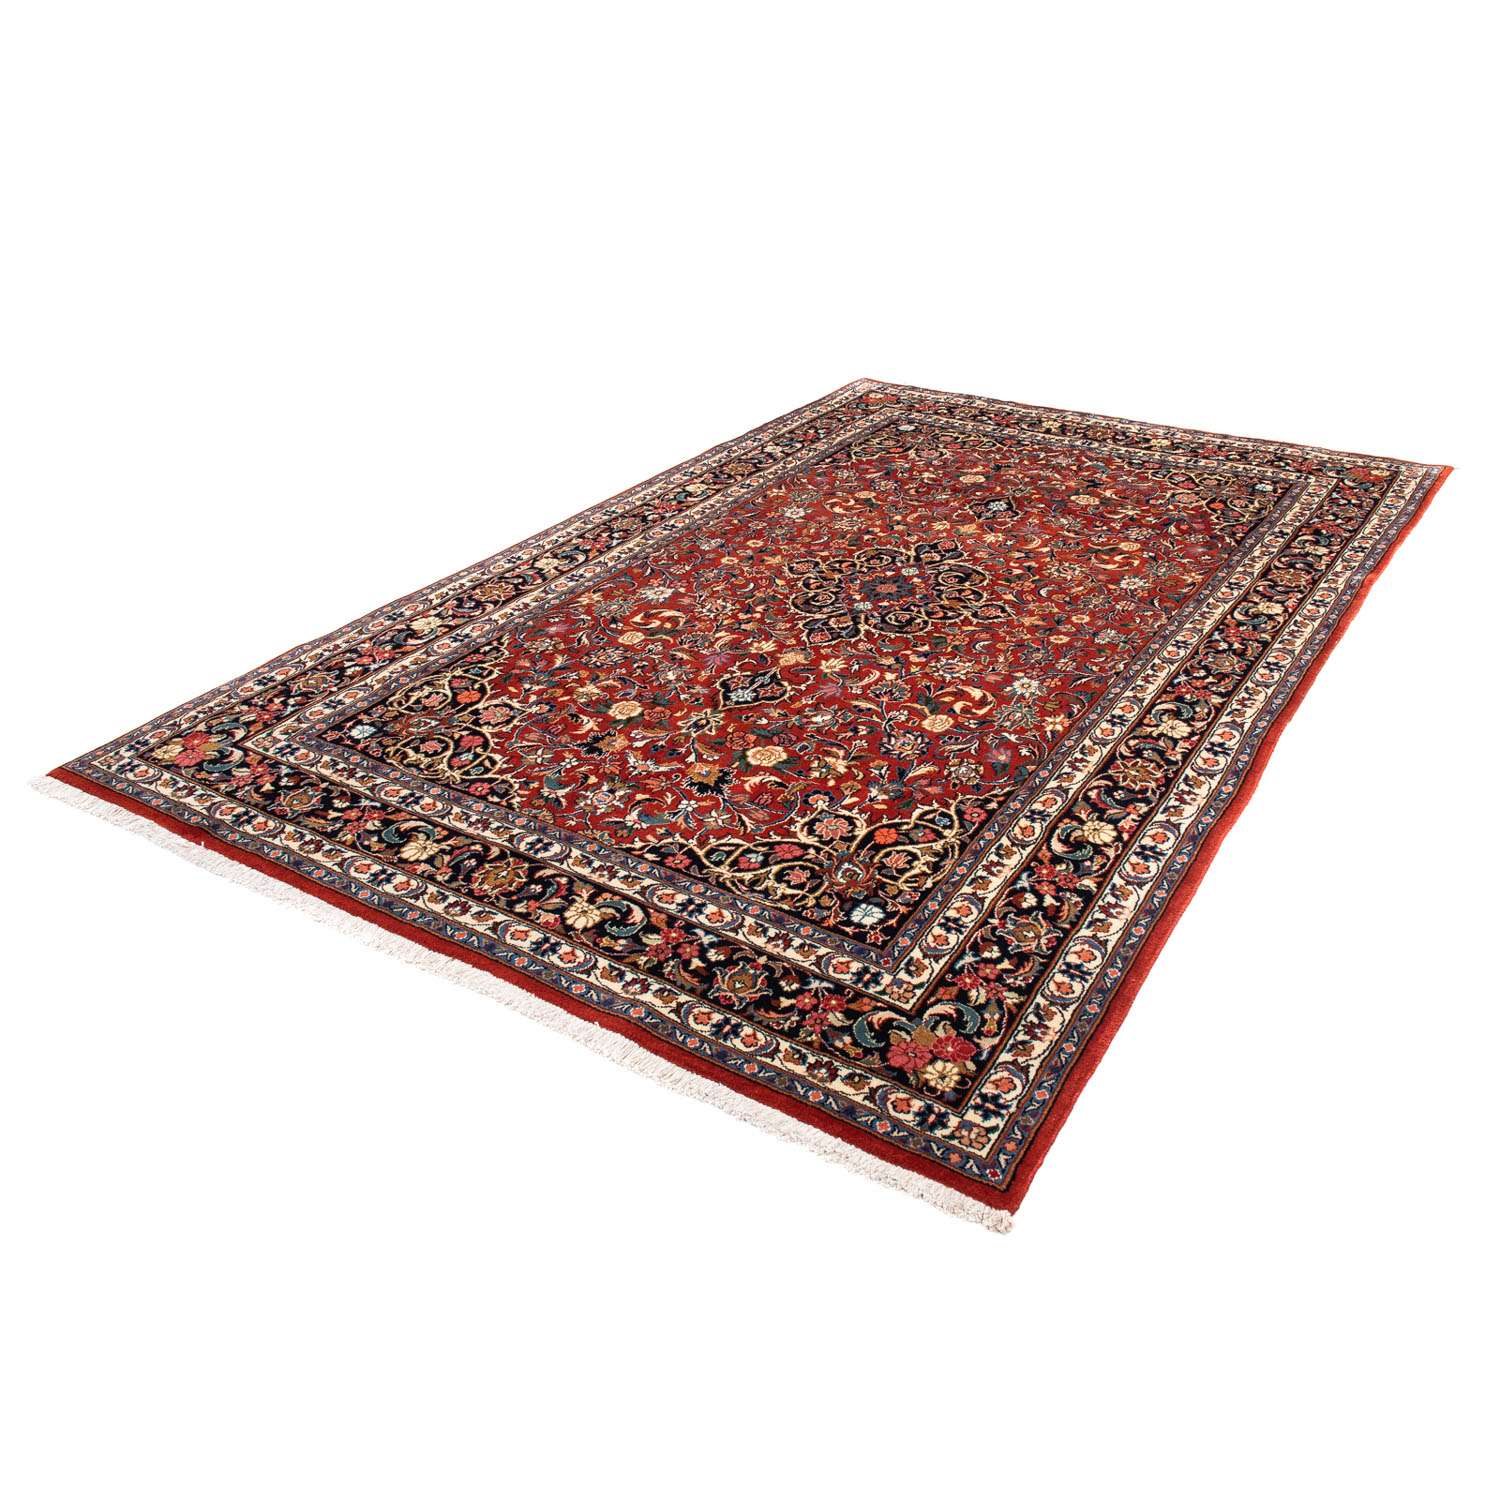 Tapis persan - Royal - 278 x 180 cm - rouge foncé